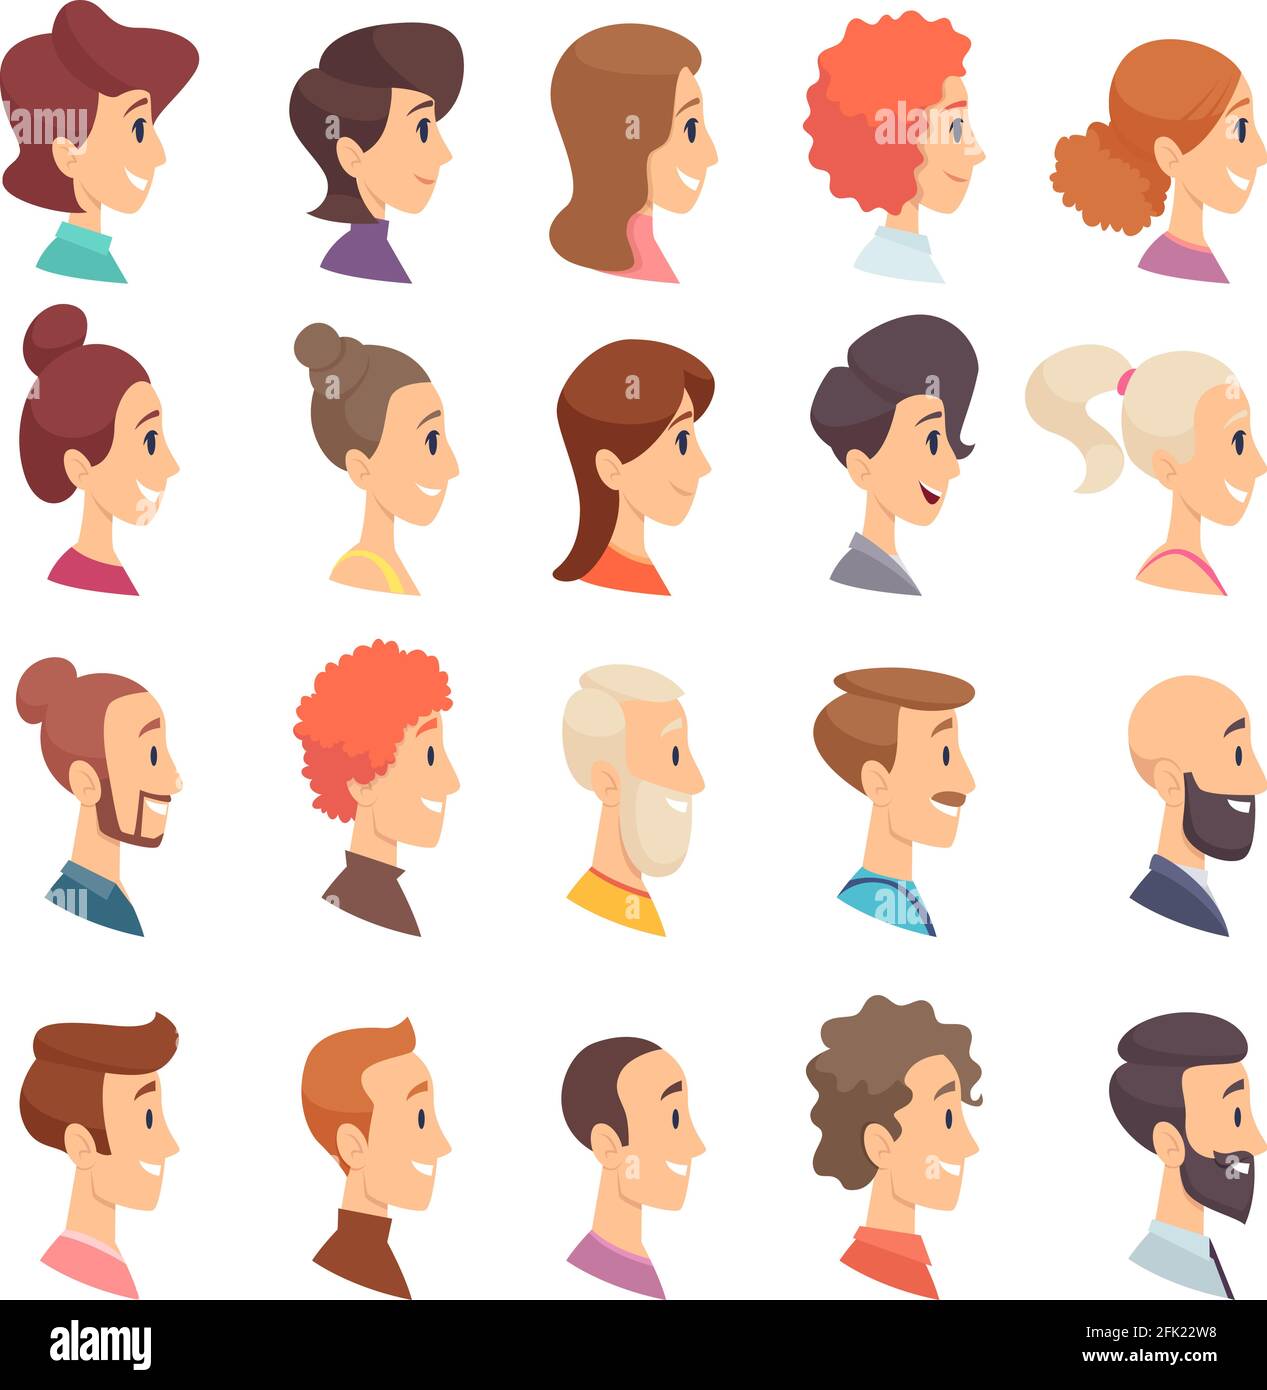 Avatare-Profil. Personen männlich und weiblich unterschiedlichen Alters ältere bärtige Kopf Lächeln Mädchen und Jungs Vektor-Zeichen Stock Vektor